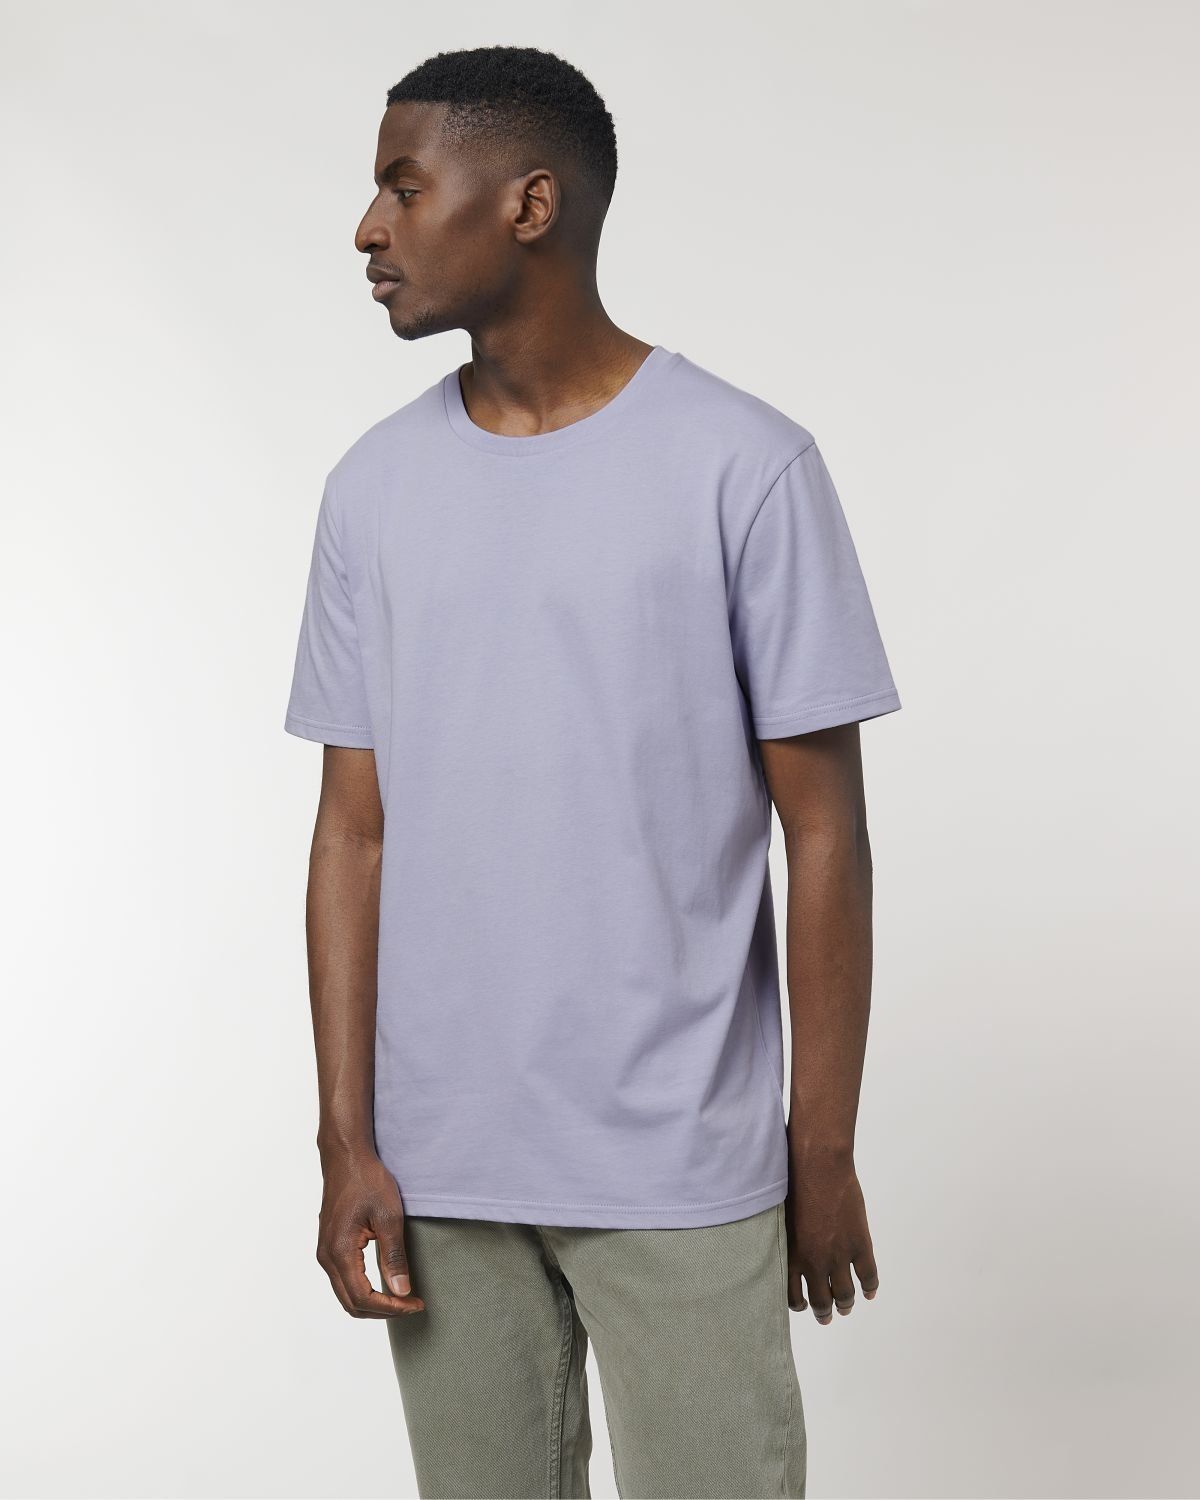 Tee-shirt personnalisé couleur Lavande